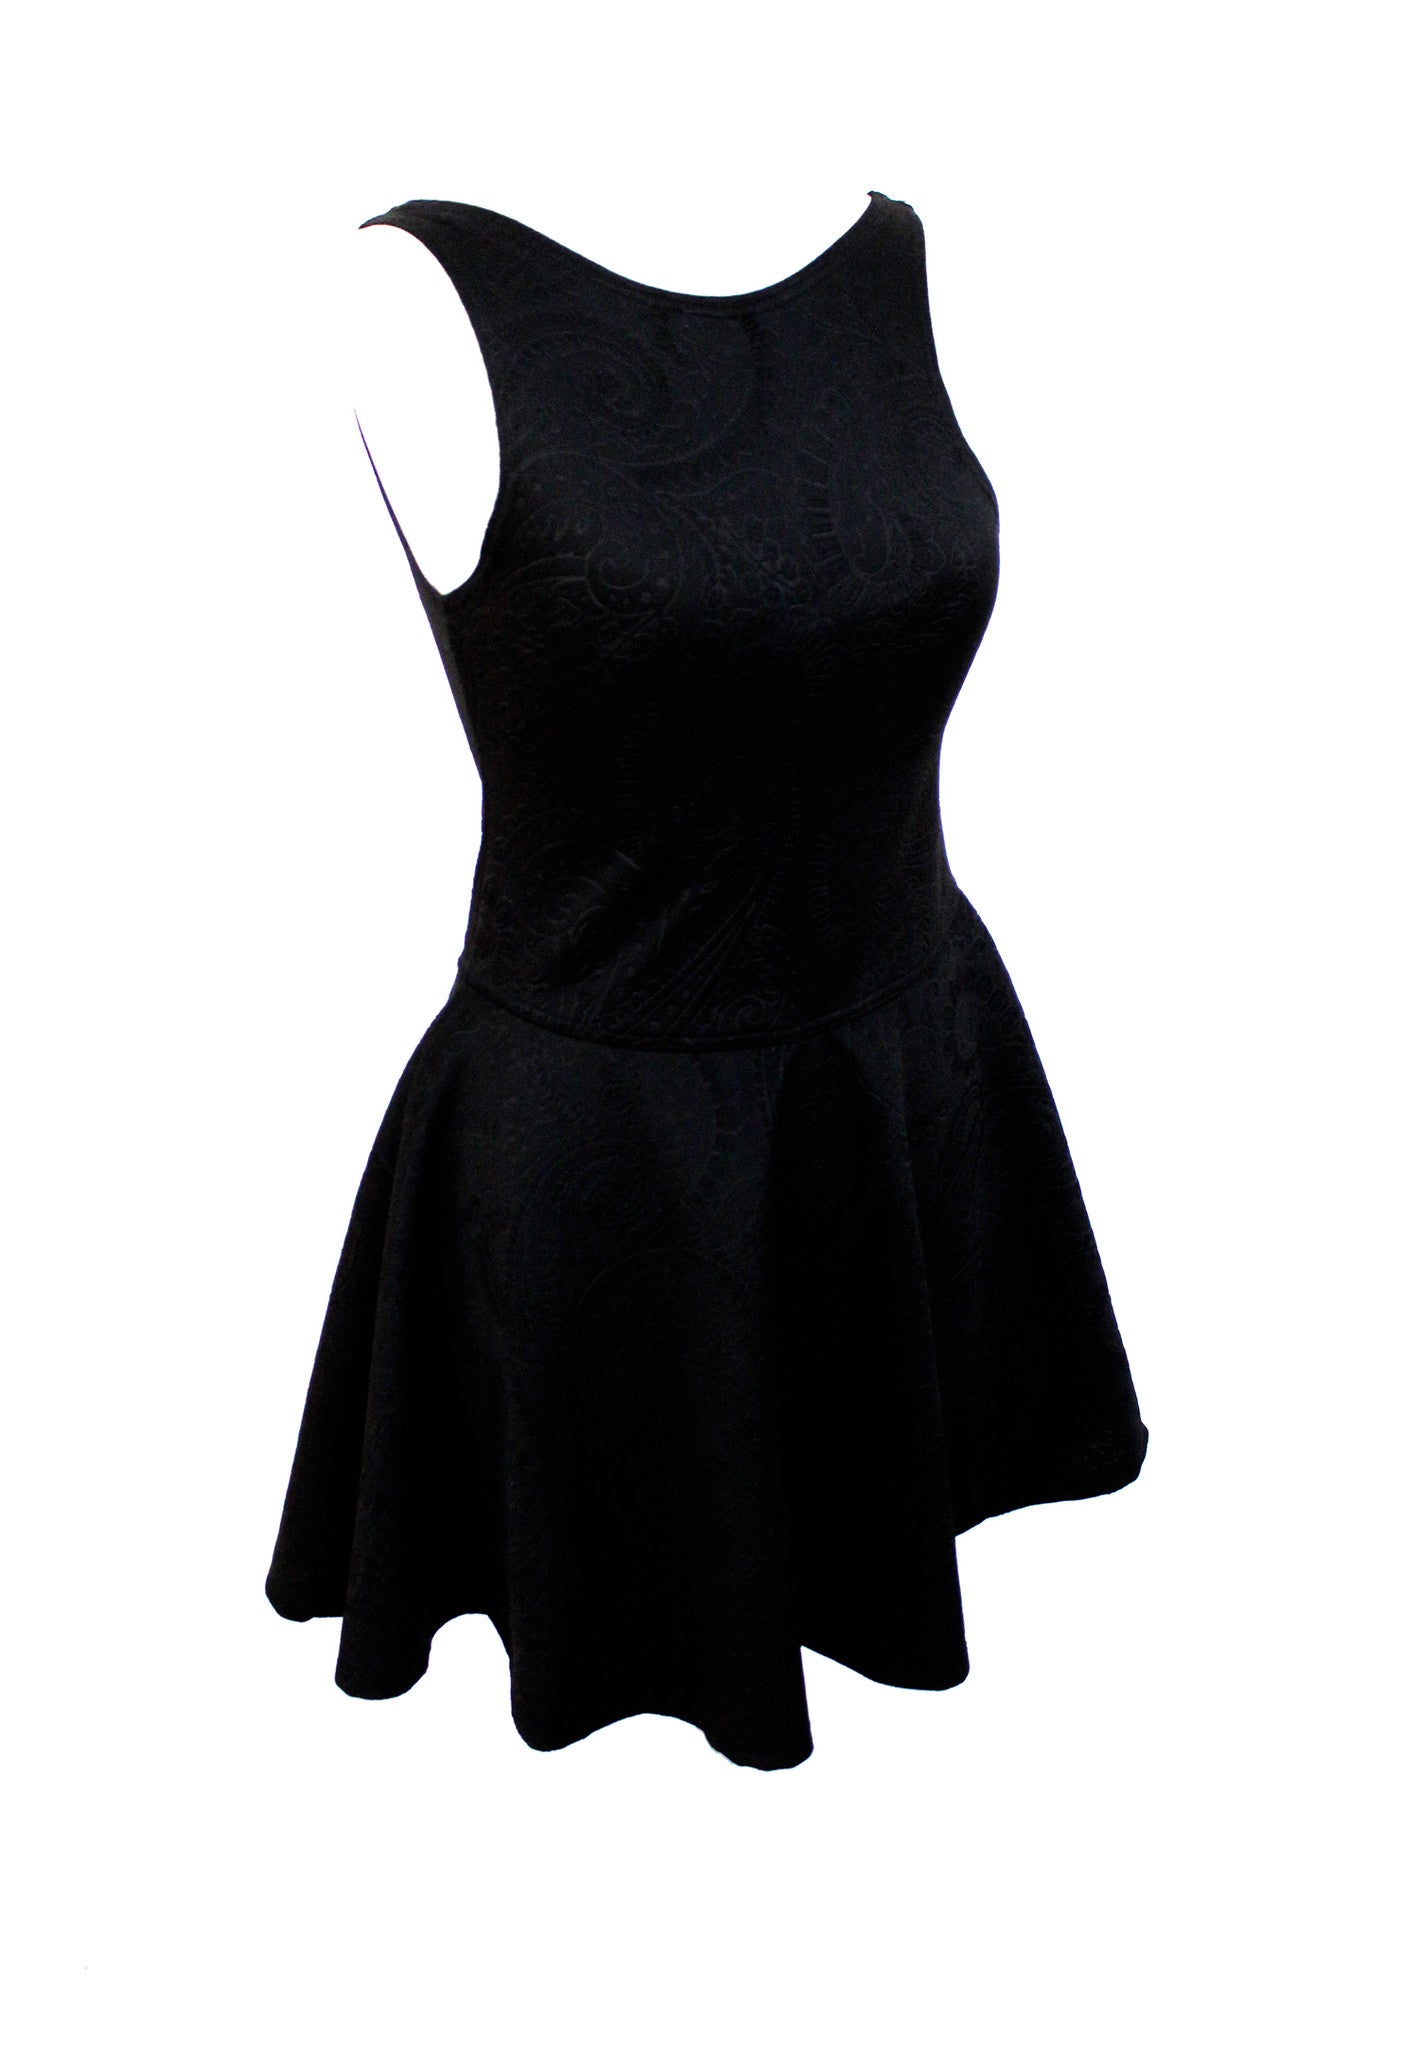 Black on black relif paisley skater dress